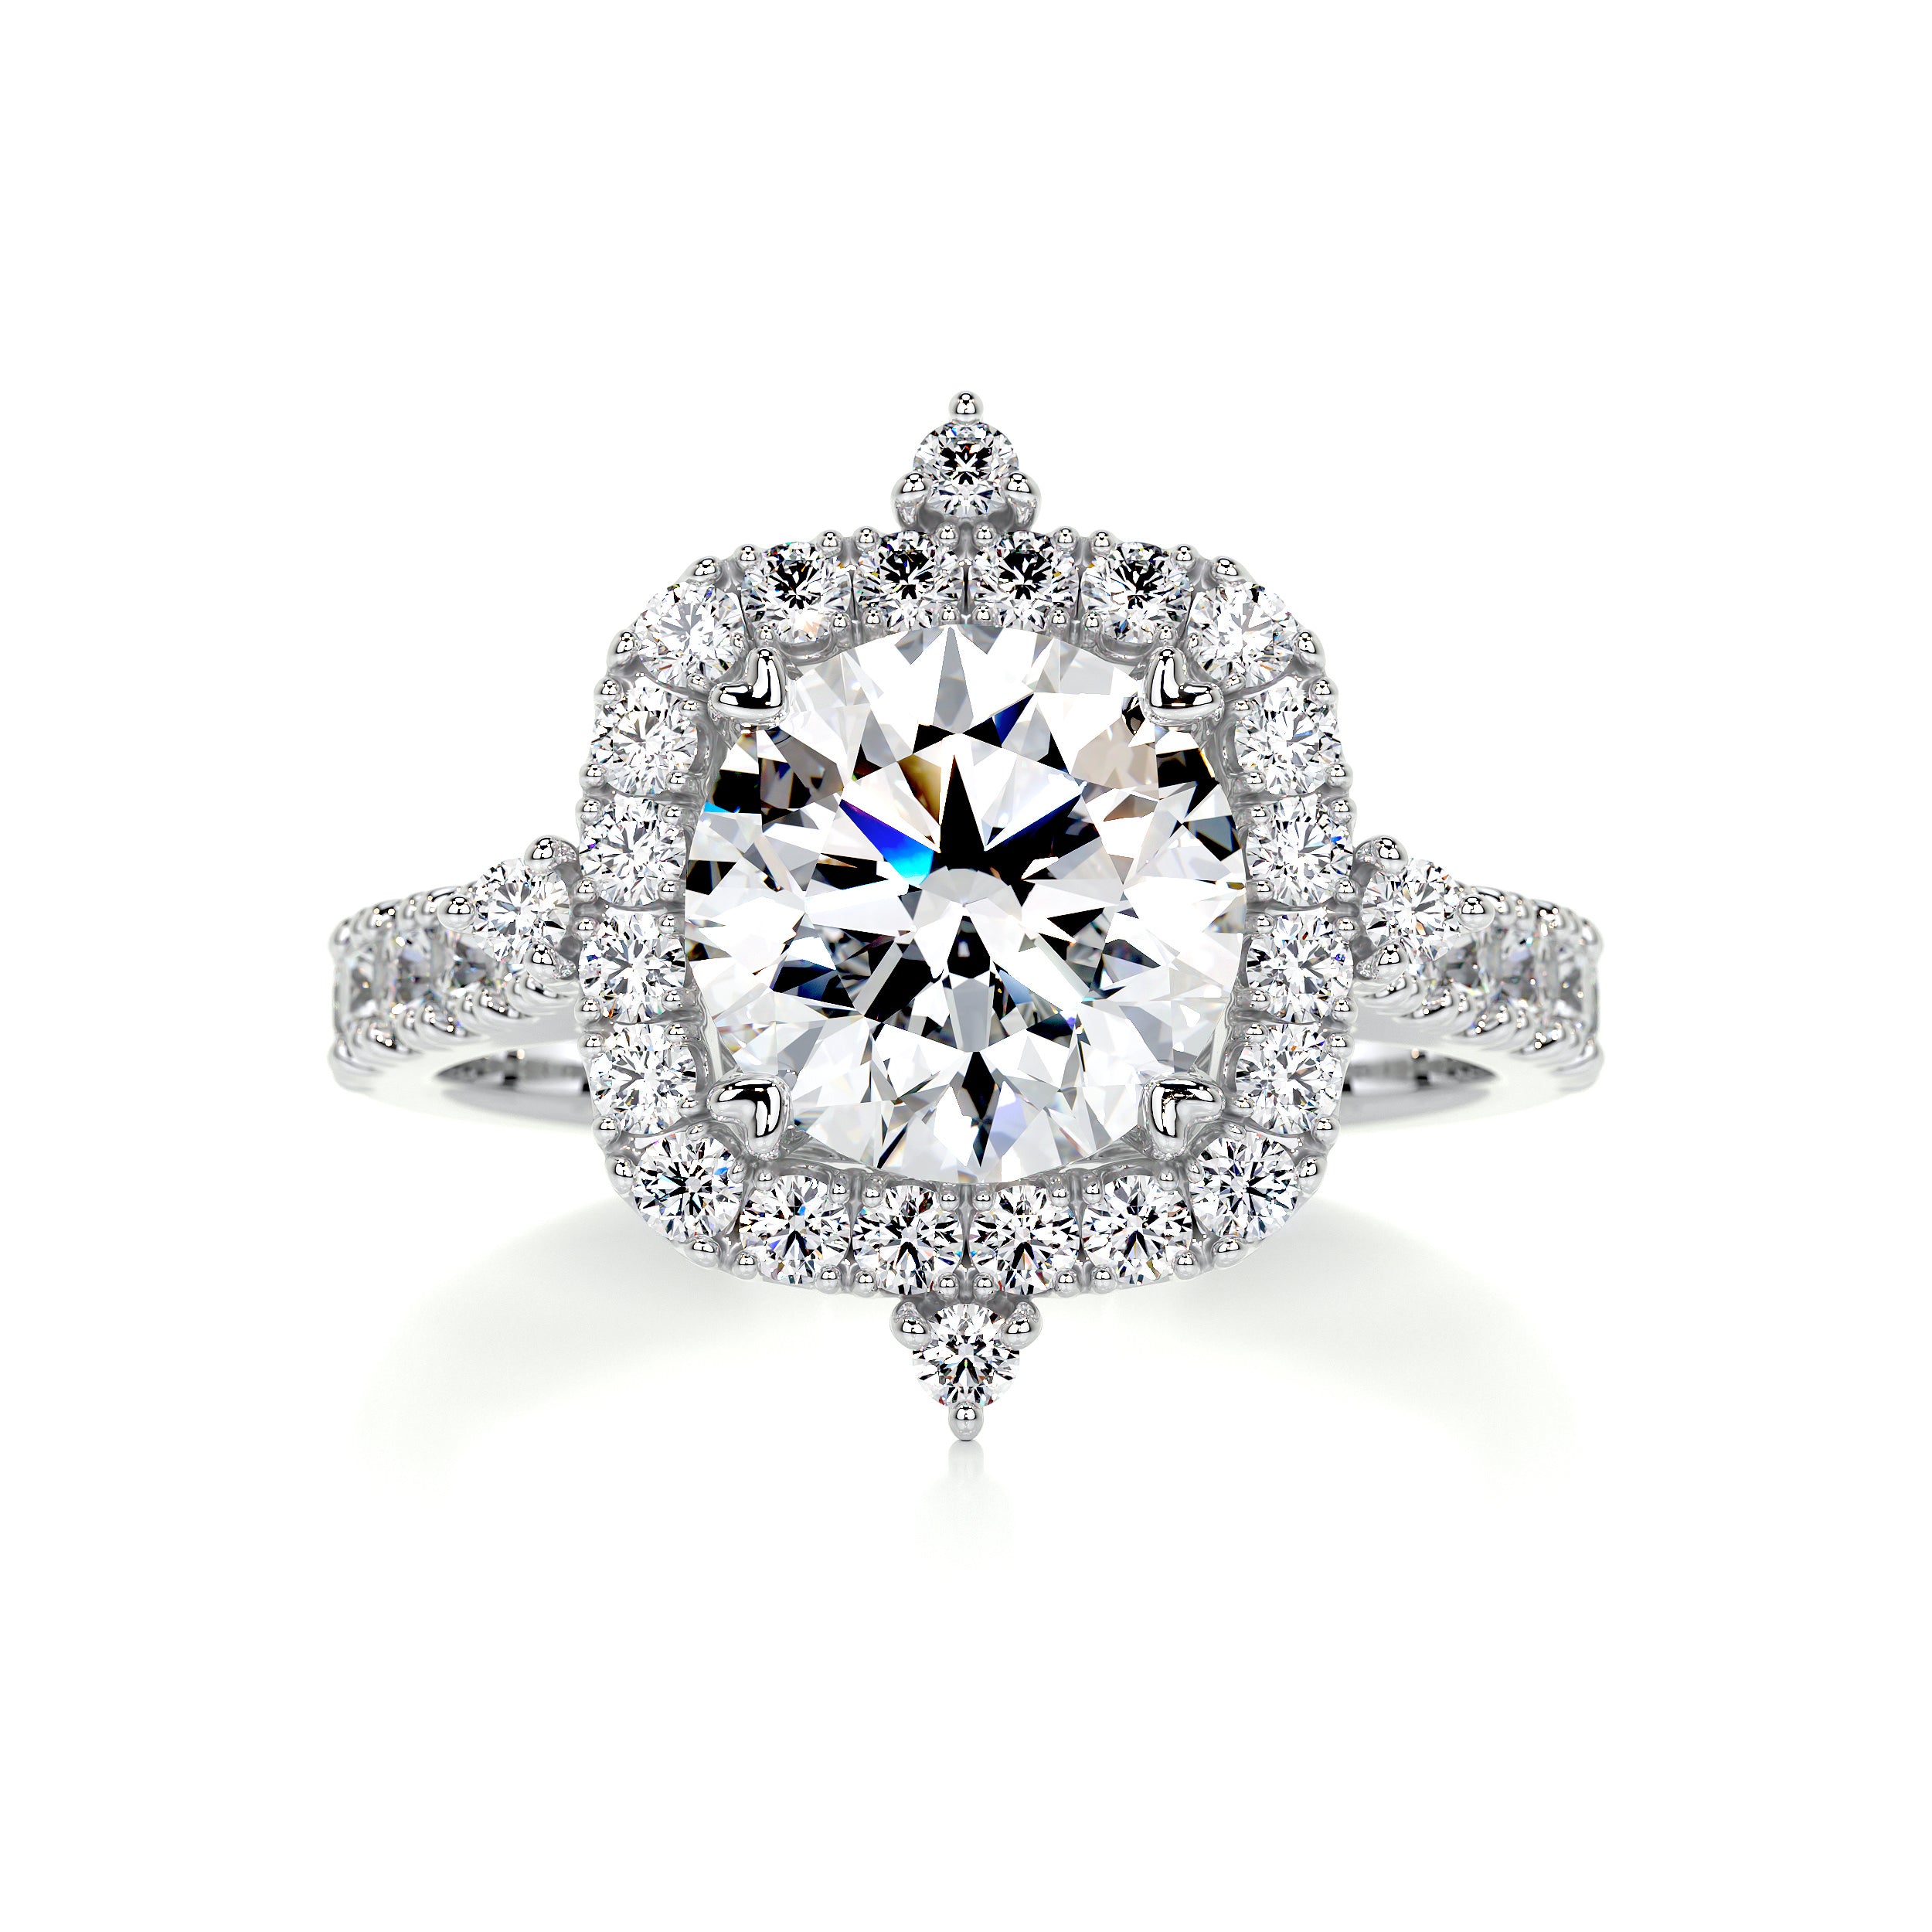 Francesca Diamond Engagement Ring -14K White Gold